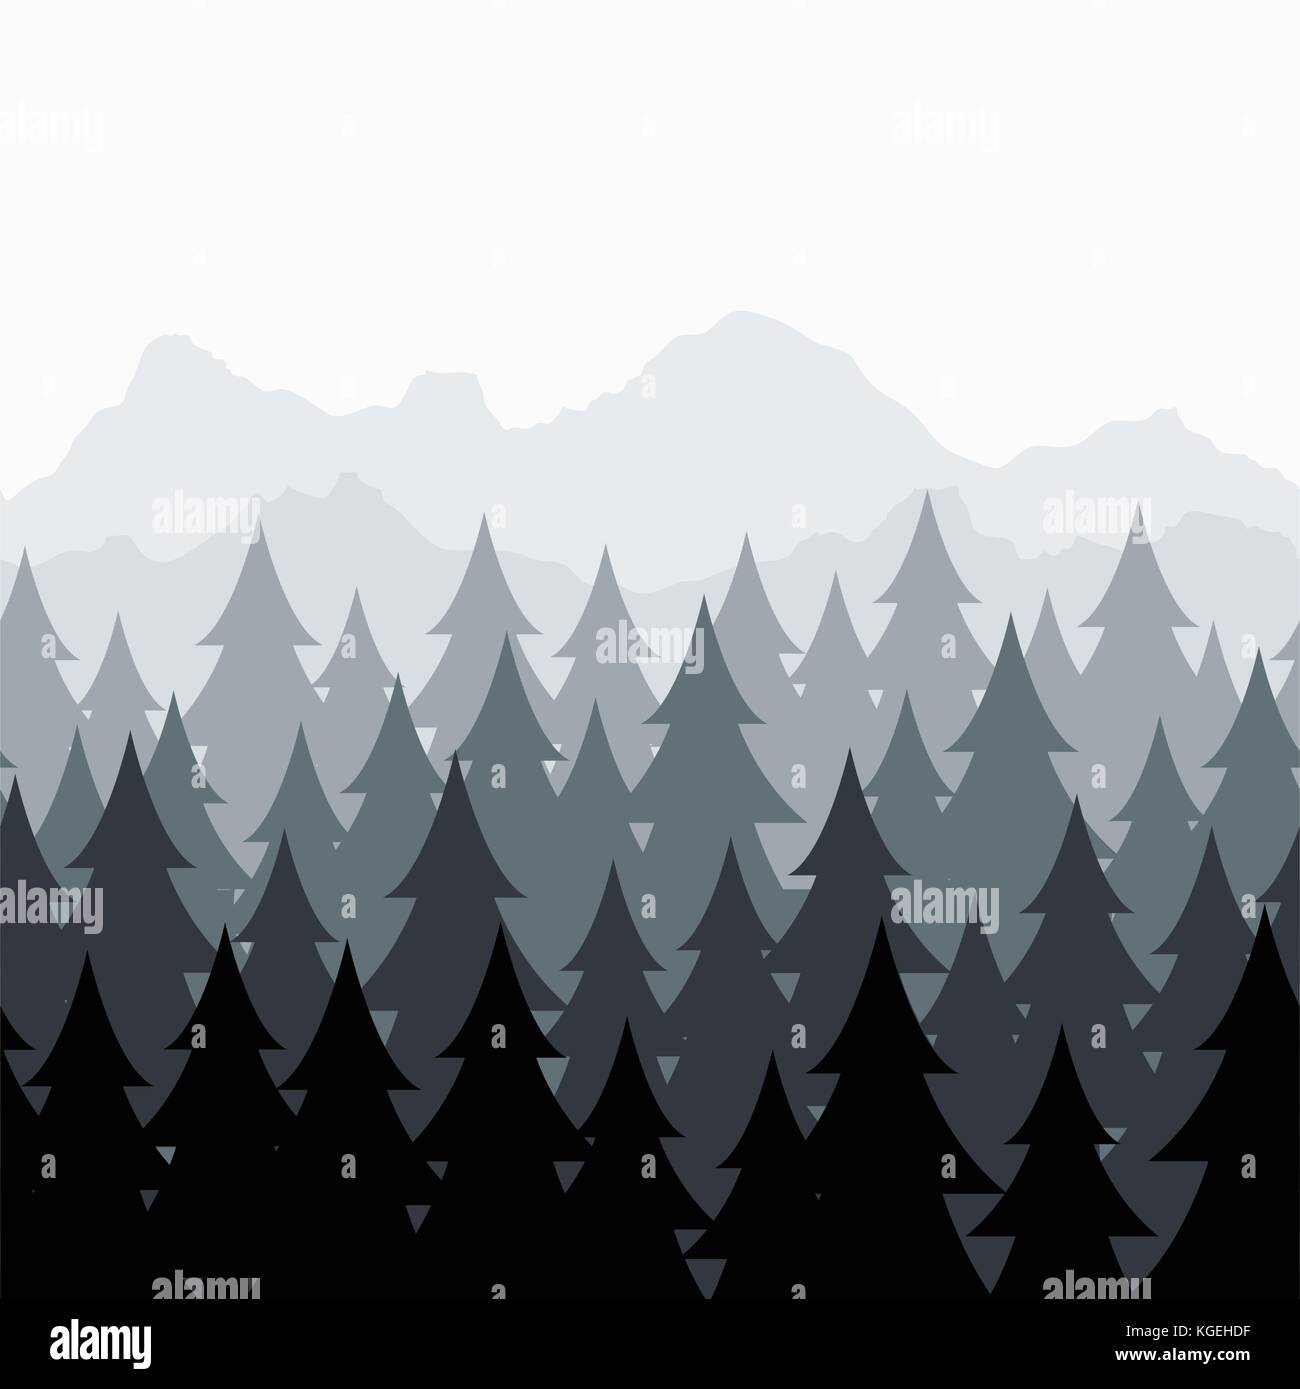 Vektor Kiefernwald nahtlose Muster abstrakte schwarz und grau Baum, Wald, Natur, Landschaft mit immergrünen Nadelbäumen und Berg silh Stock Vektor